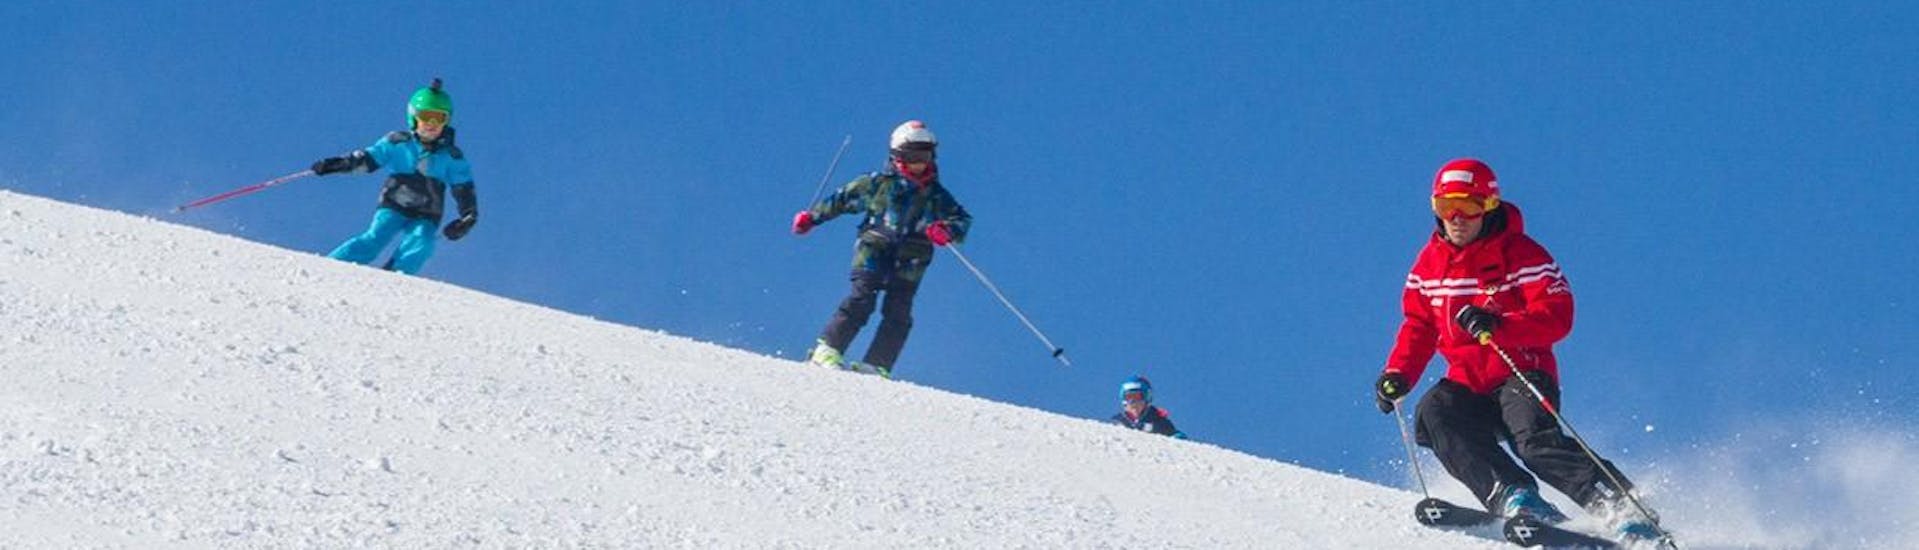 De skileraar van Sertorelli Skischool Bormio is met de kinderen bij skilessen voor kinderen met ervaring.